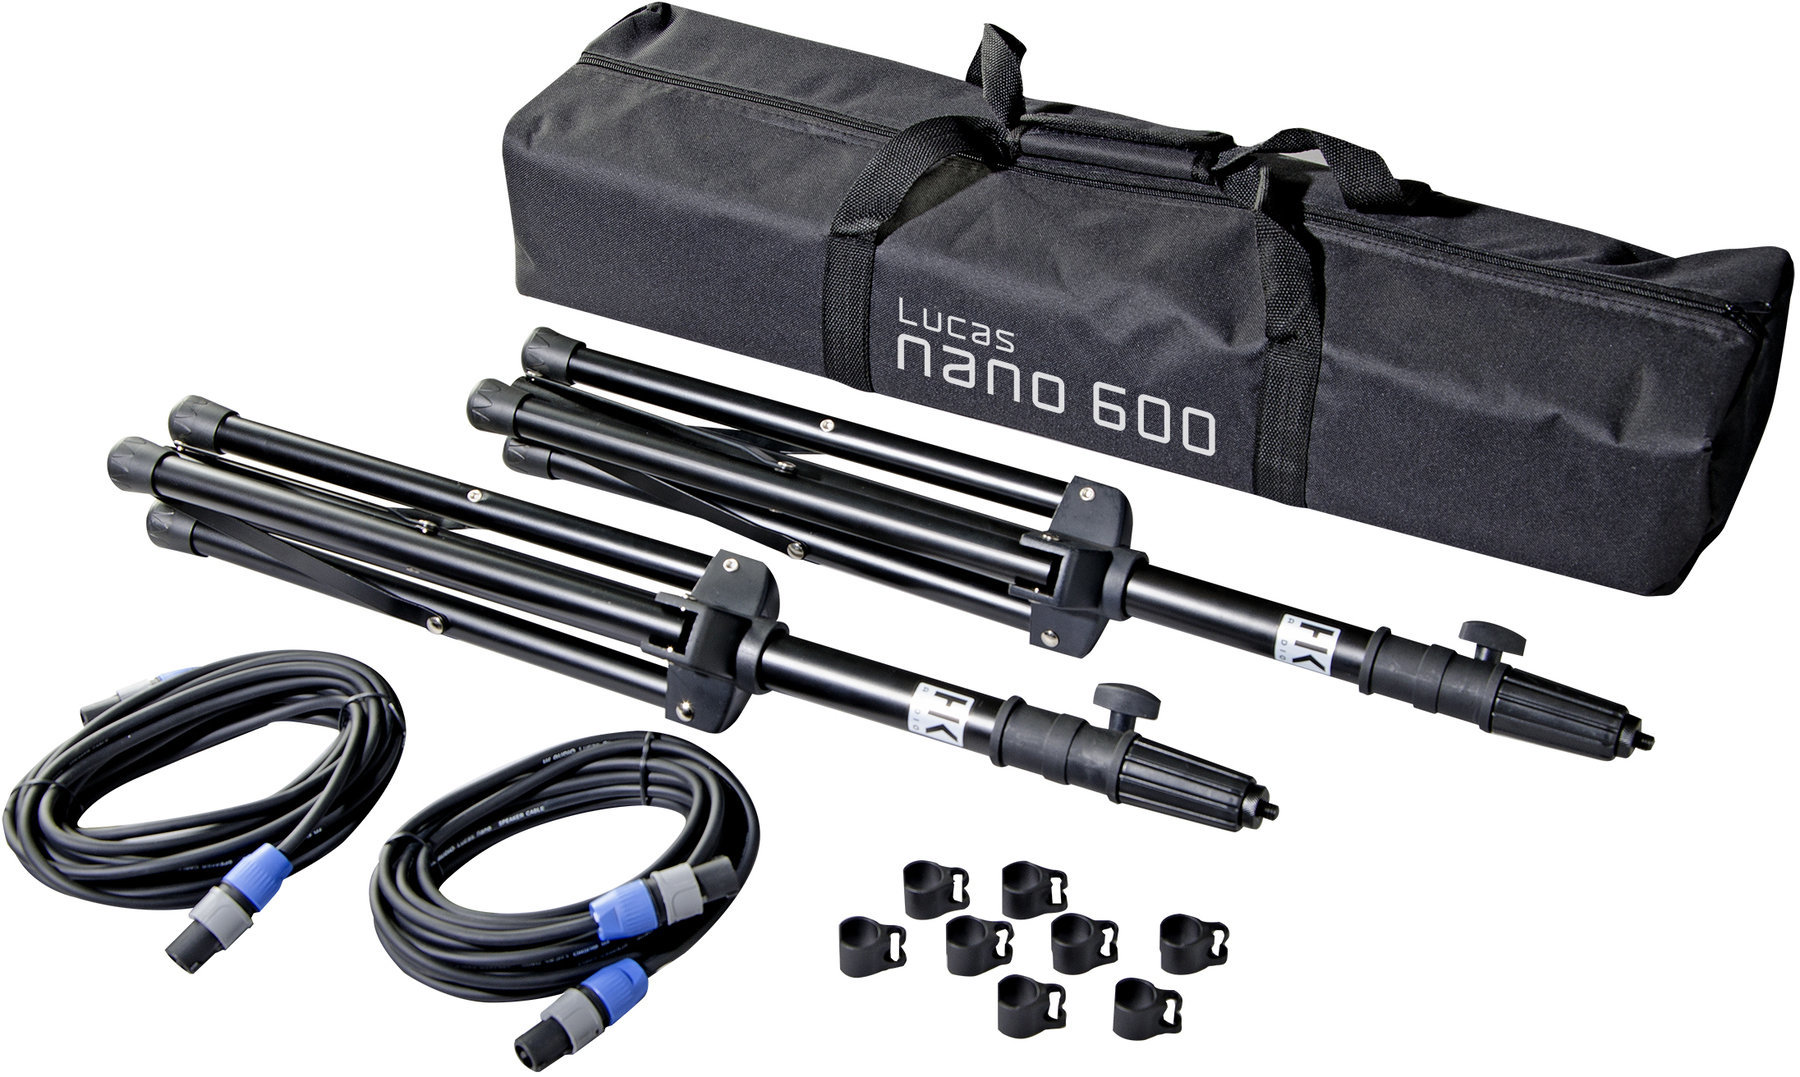 Poteau d'enceinte télescopique HK Audio L.U.C.A.S. NANO 600 Stereo Stand Add On